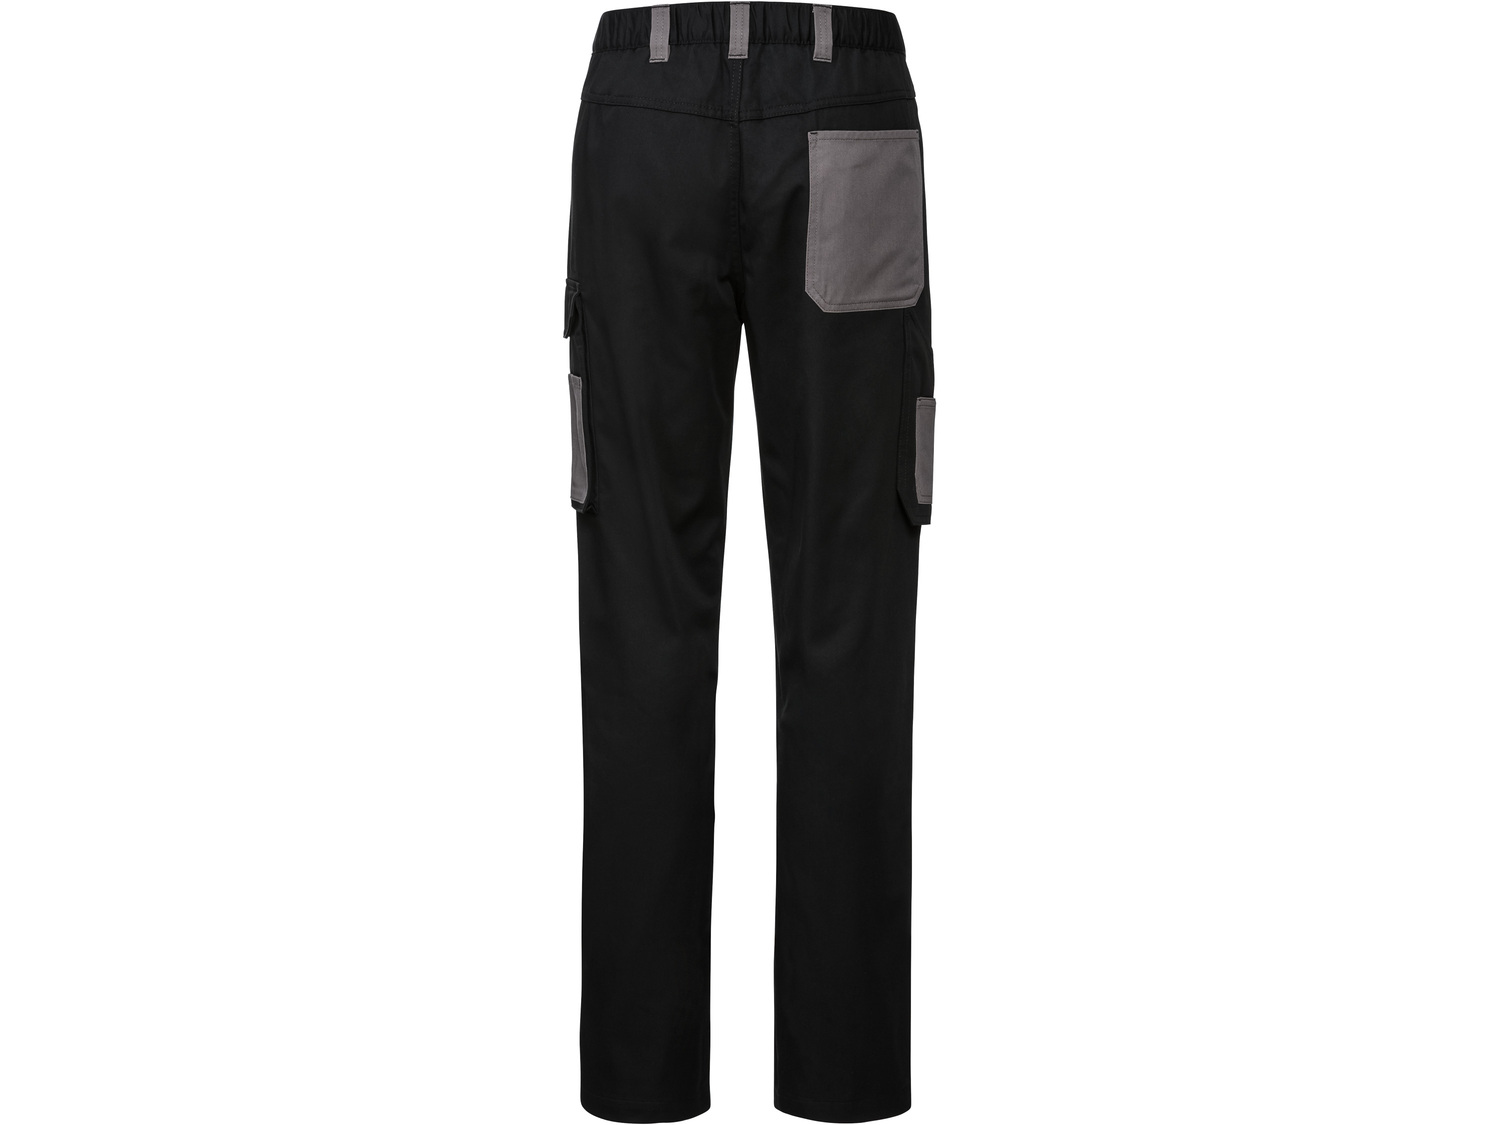 Spodnie robocze Parkside, cena 49,99 PLN 
- rozmiary: 48-54
- kieszenie na narzędzia
- ...